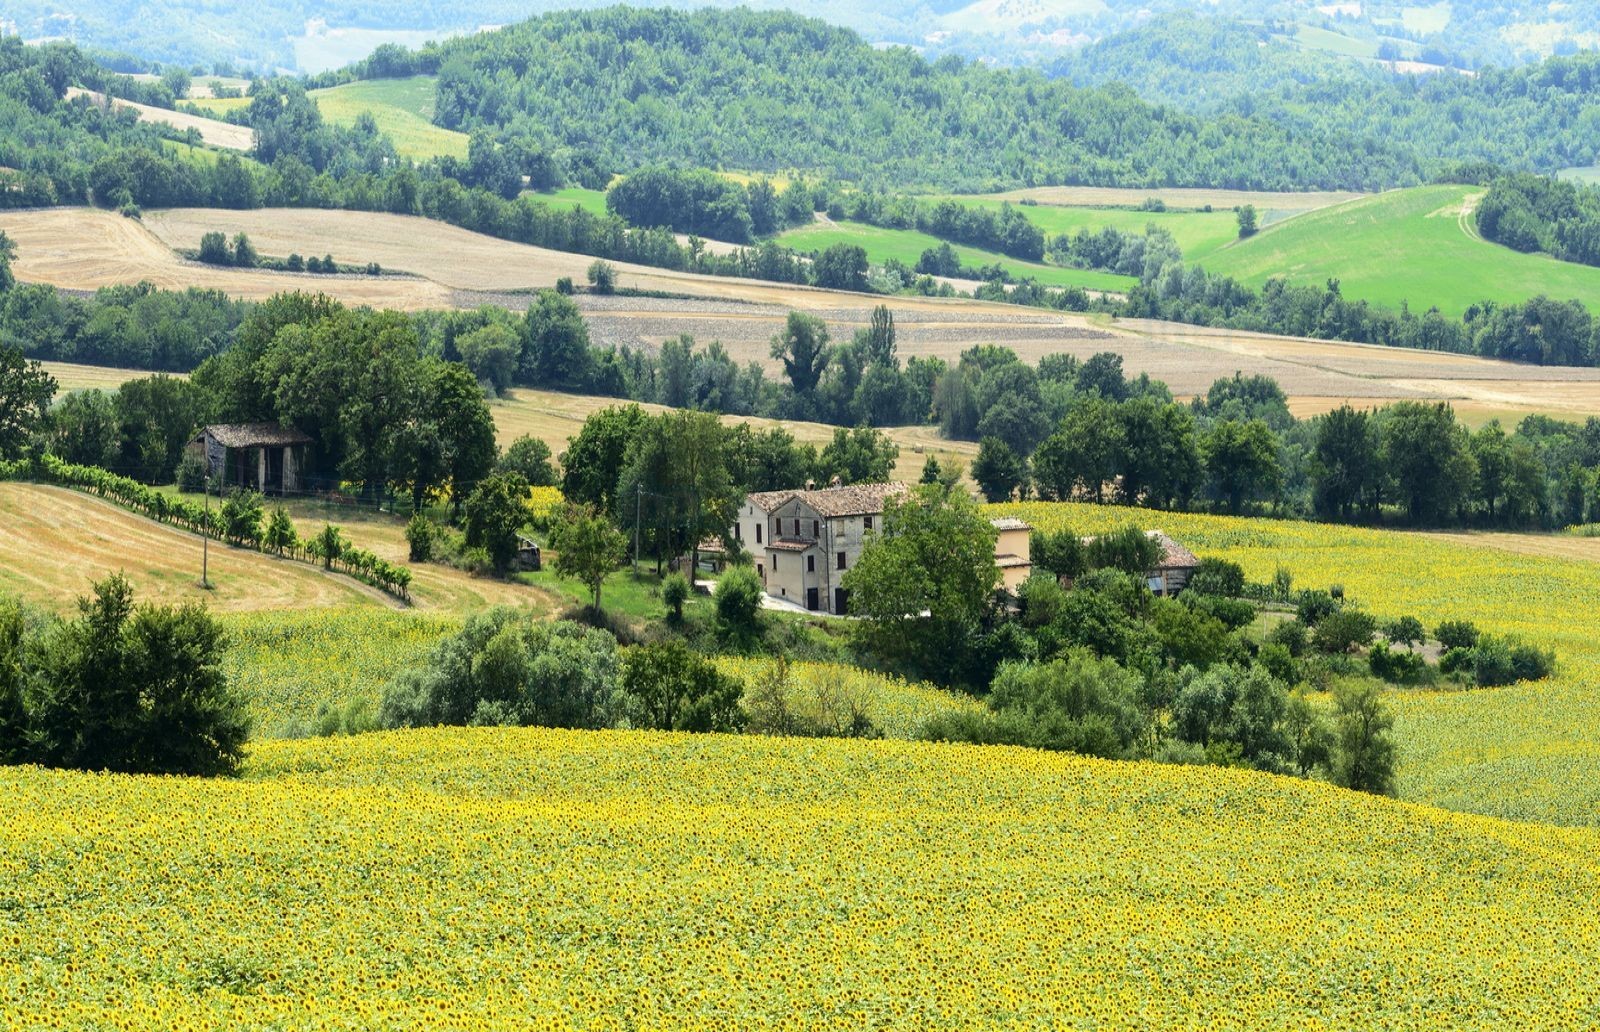 Rural village in the Marche Region